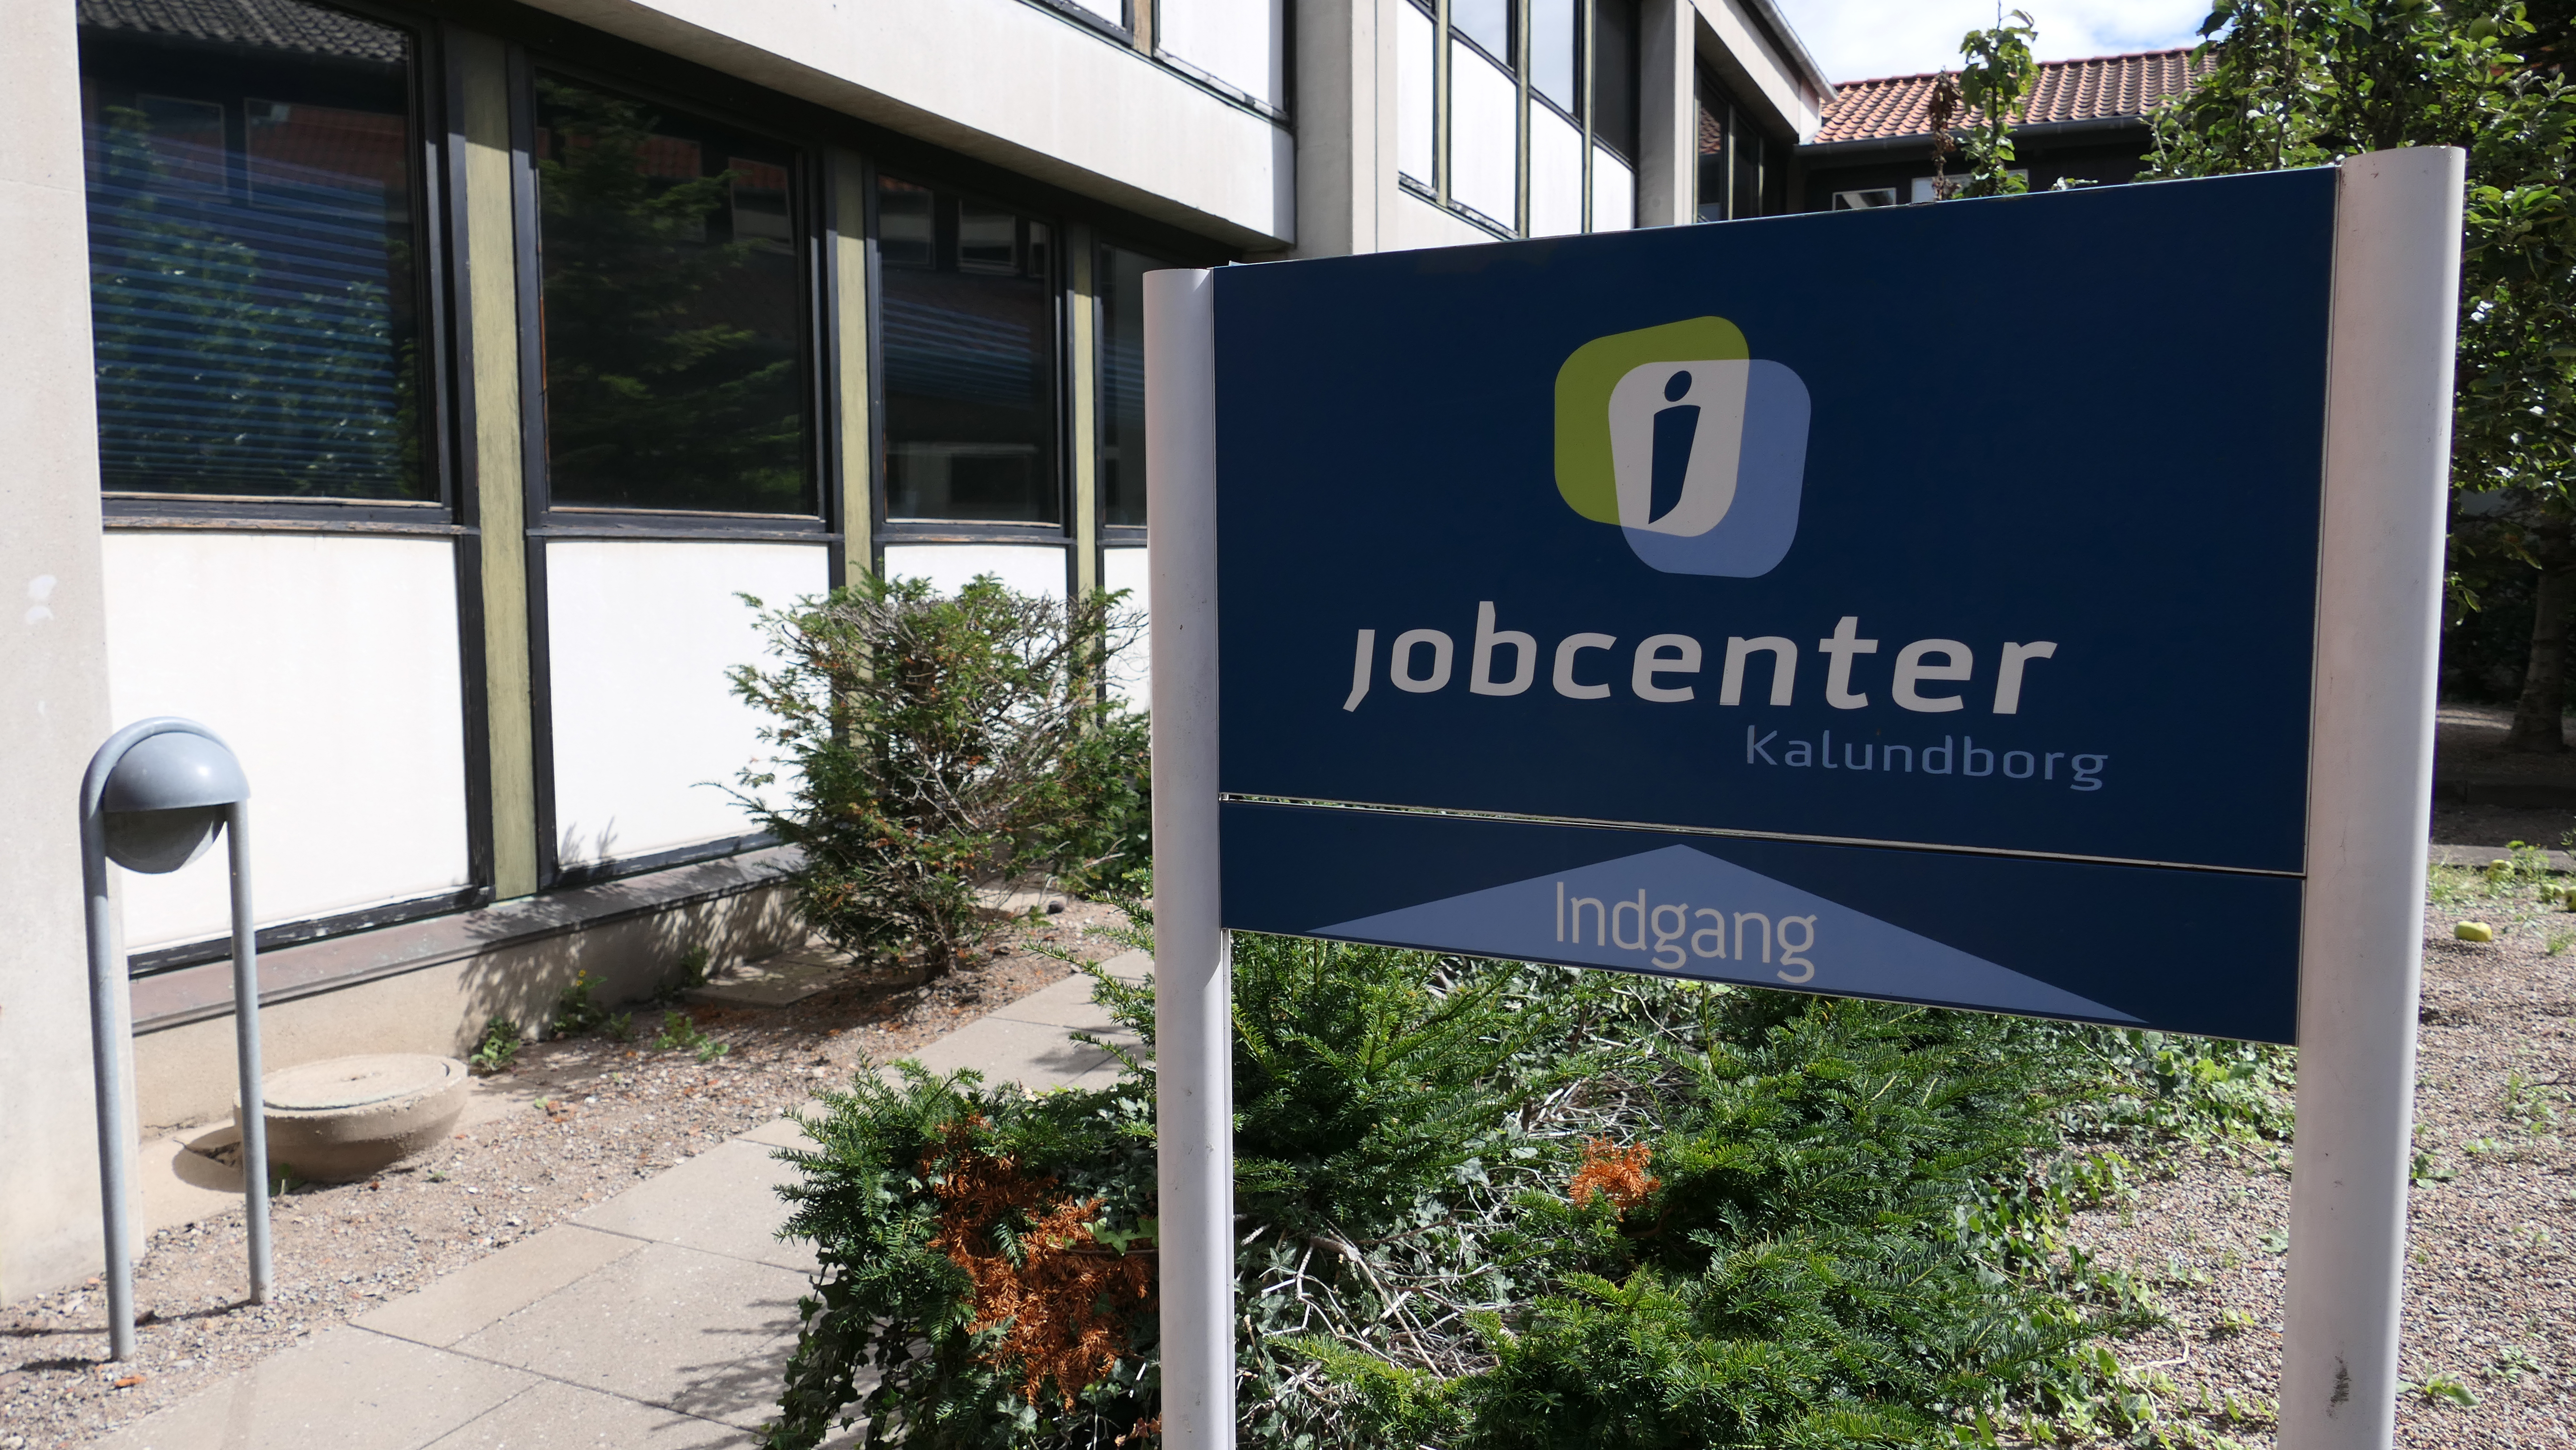 hund kedel Bluebell Få hjælp til din jobsøgning i Jobcenter Kalundborg